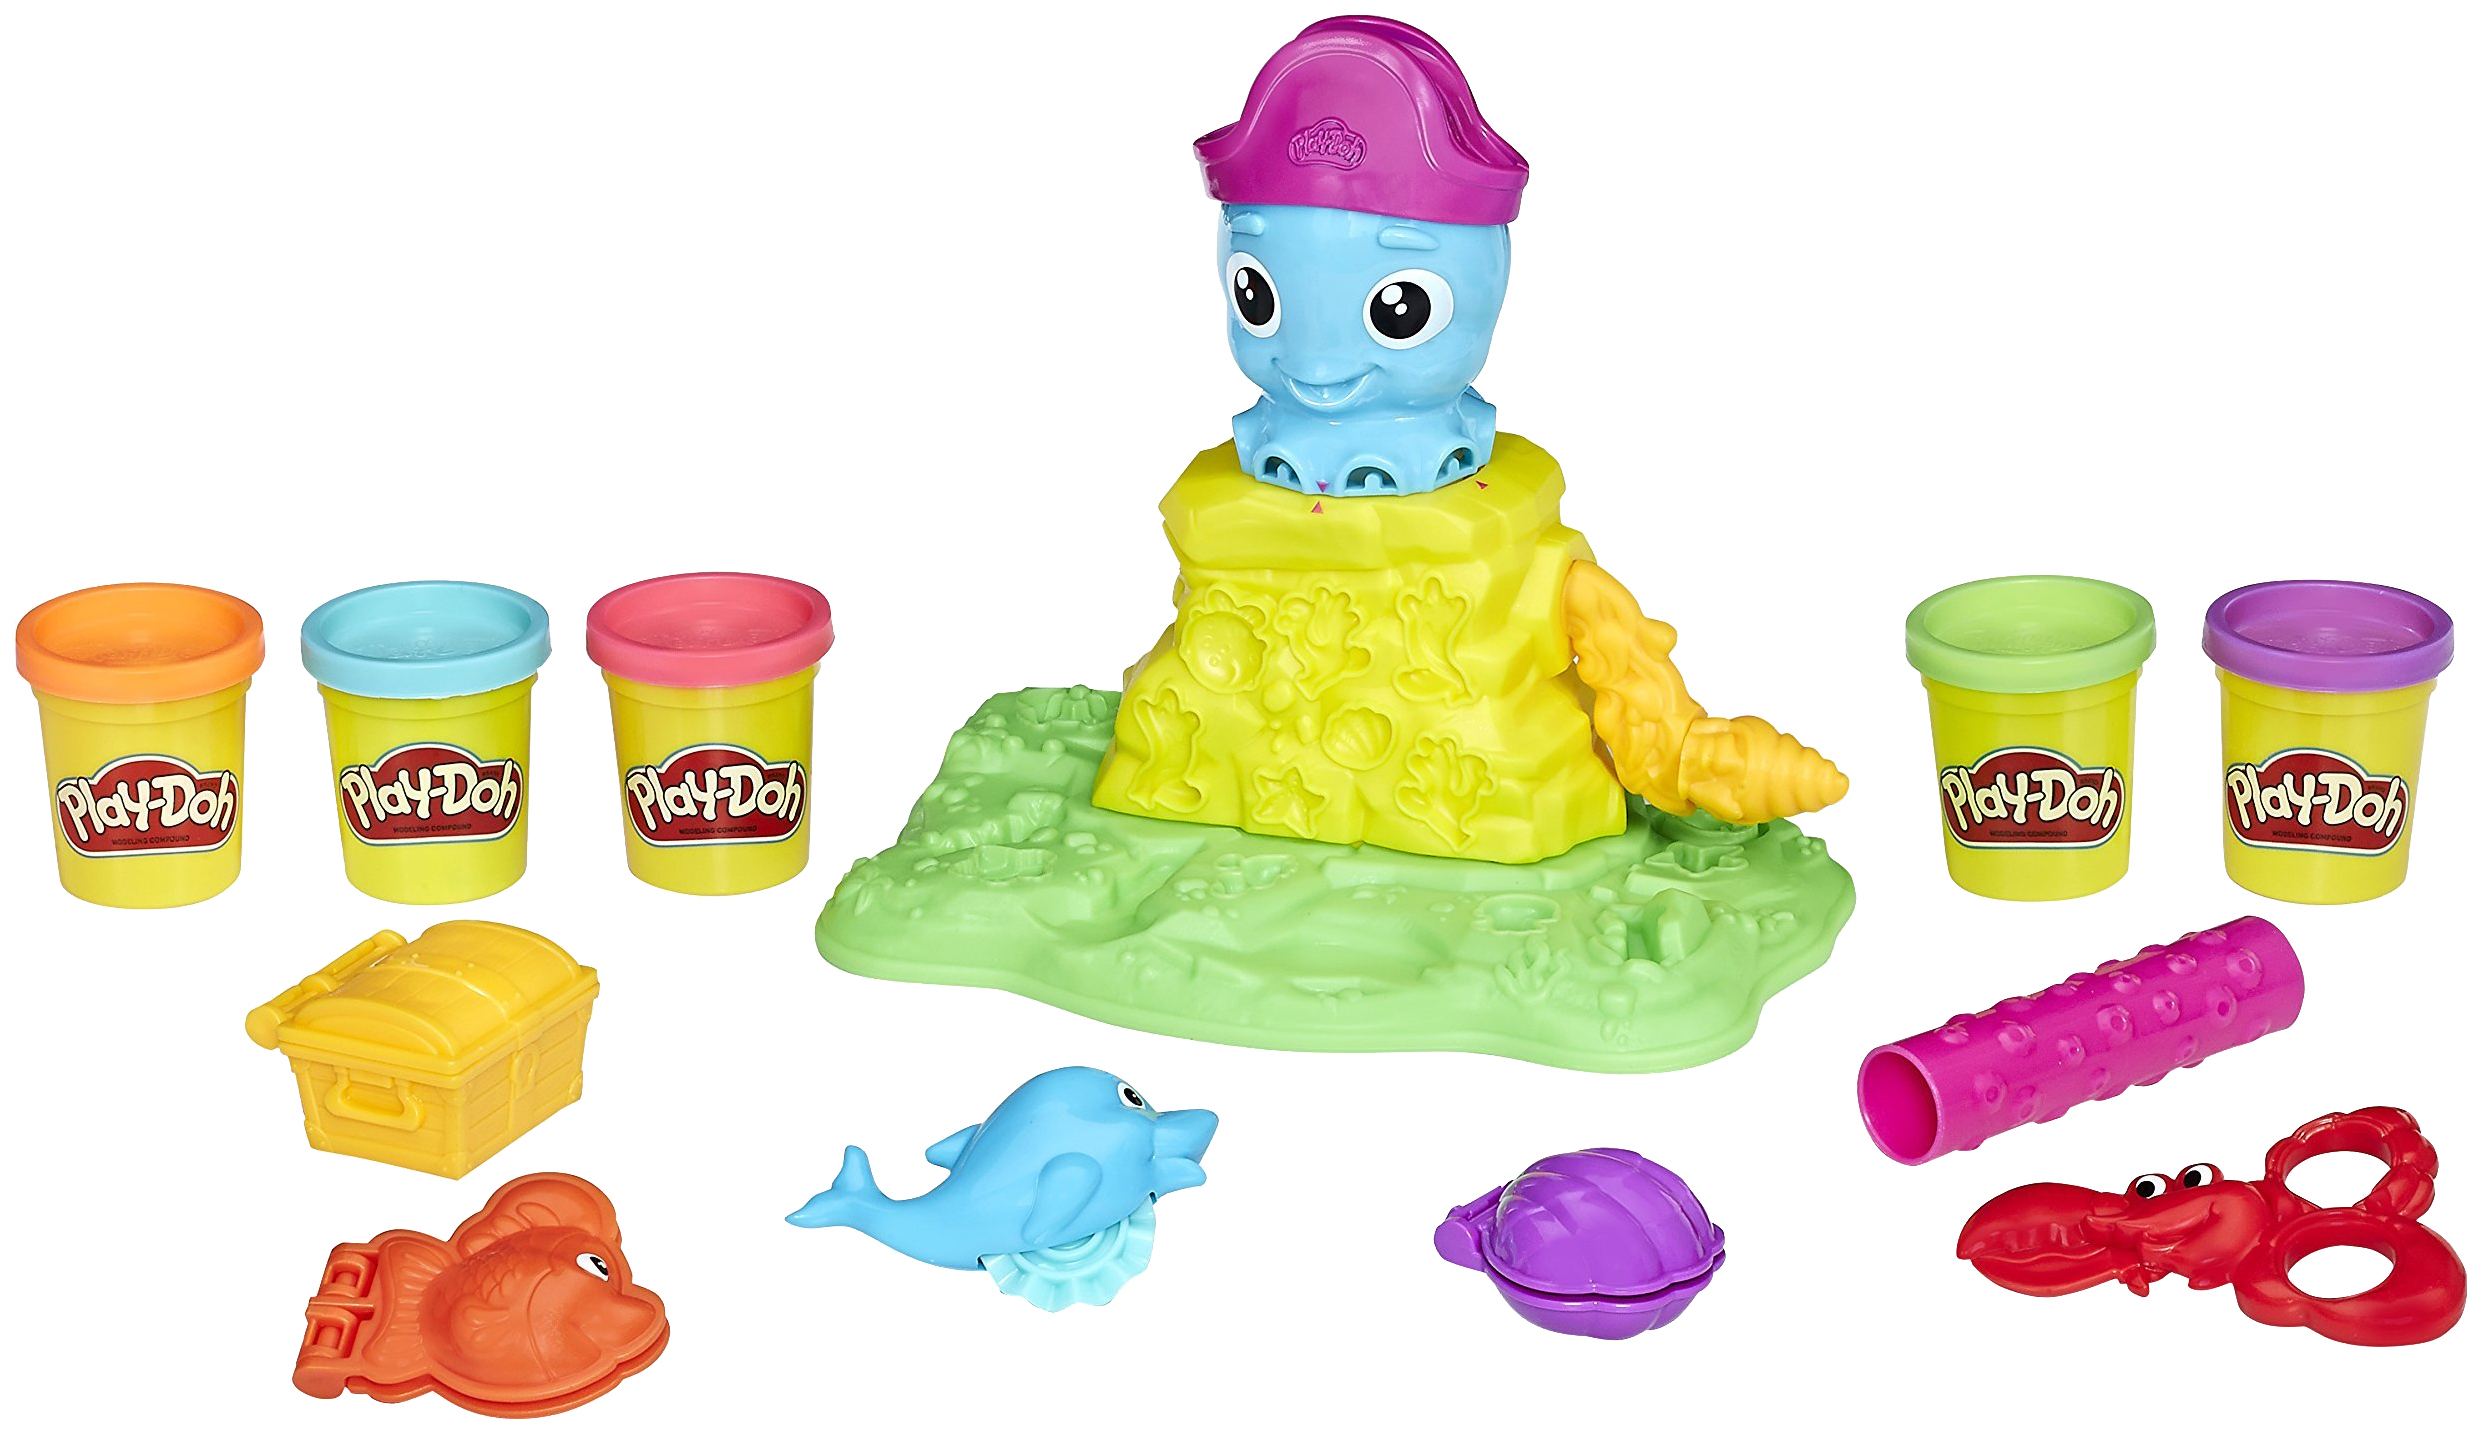 Набор для лепки игровой Play-Doh Веселый Осьминог, E0800 набор для лепки игровой play doh веселый осьминог e0800